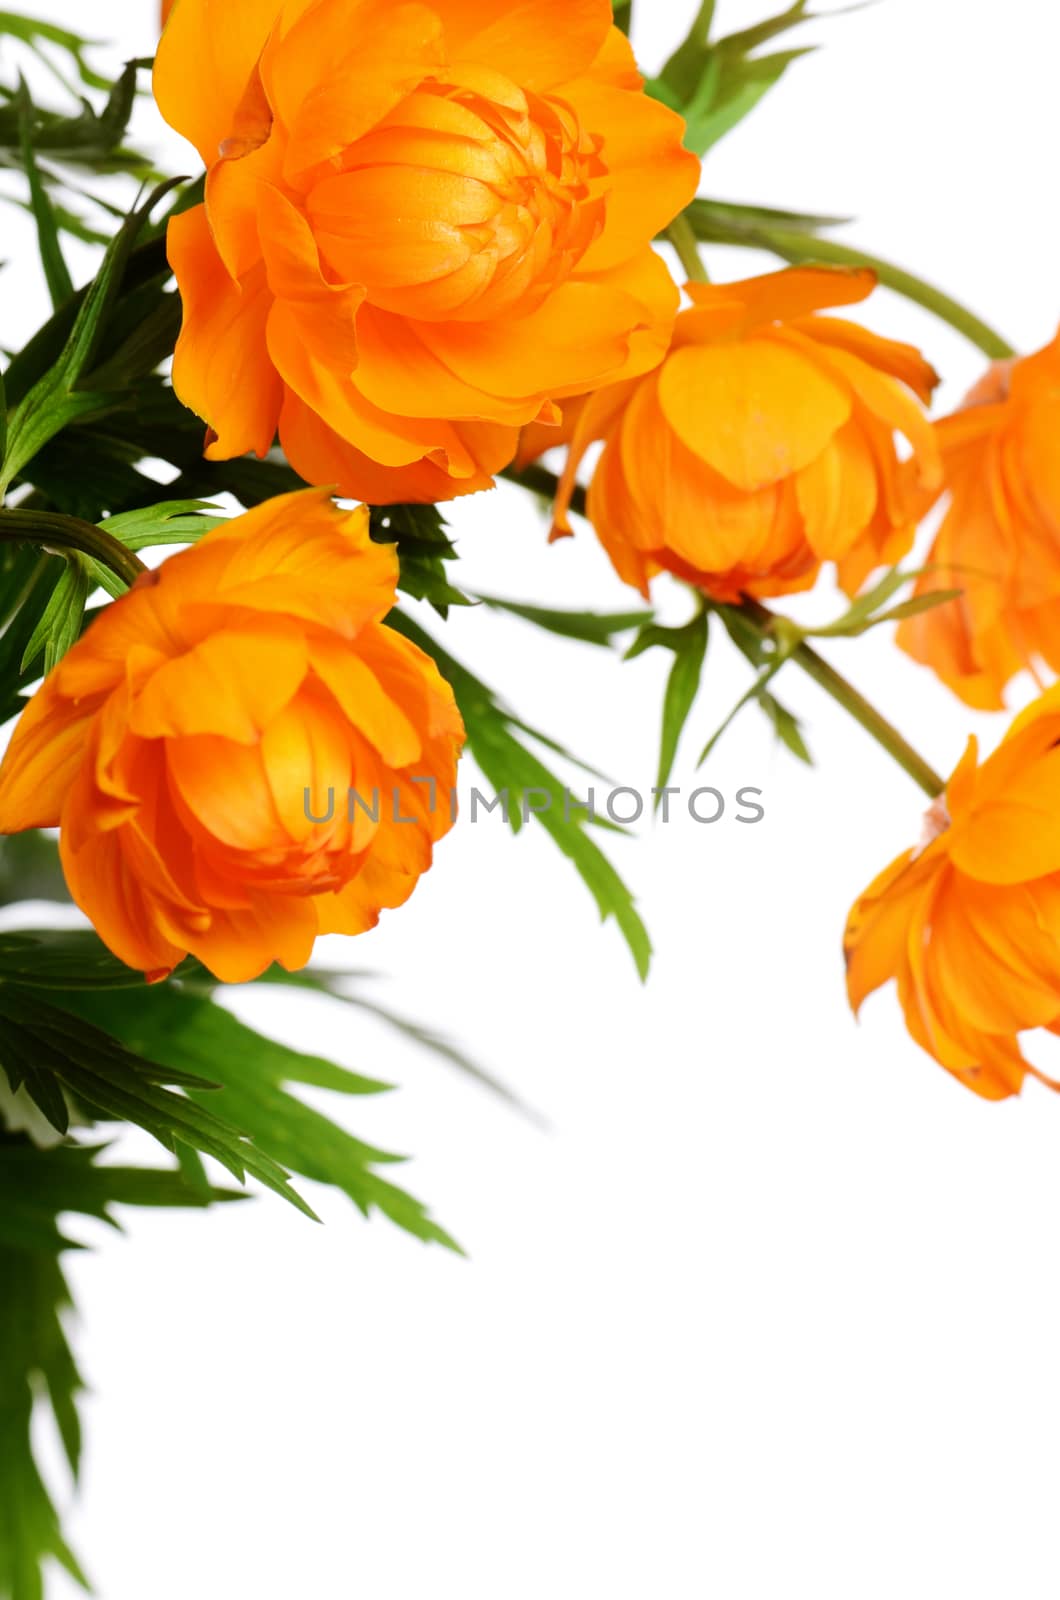 Beautiful orange flowers isolated on white background